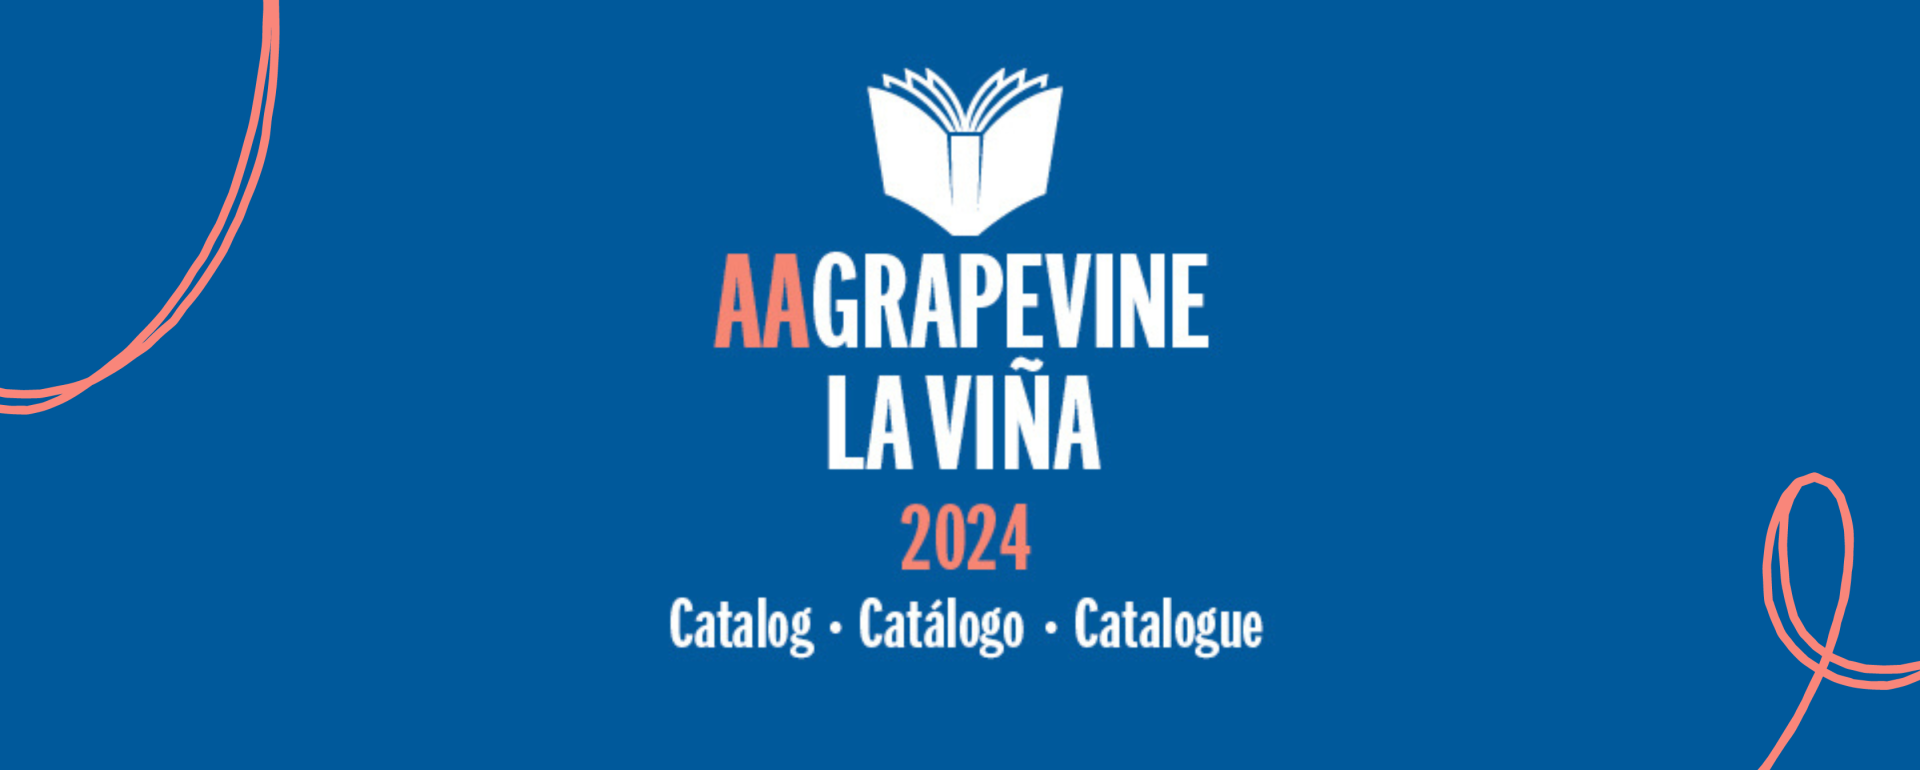 Grapevine Catalog